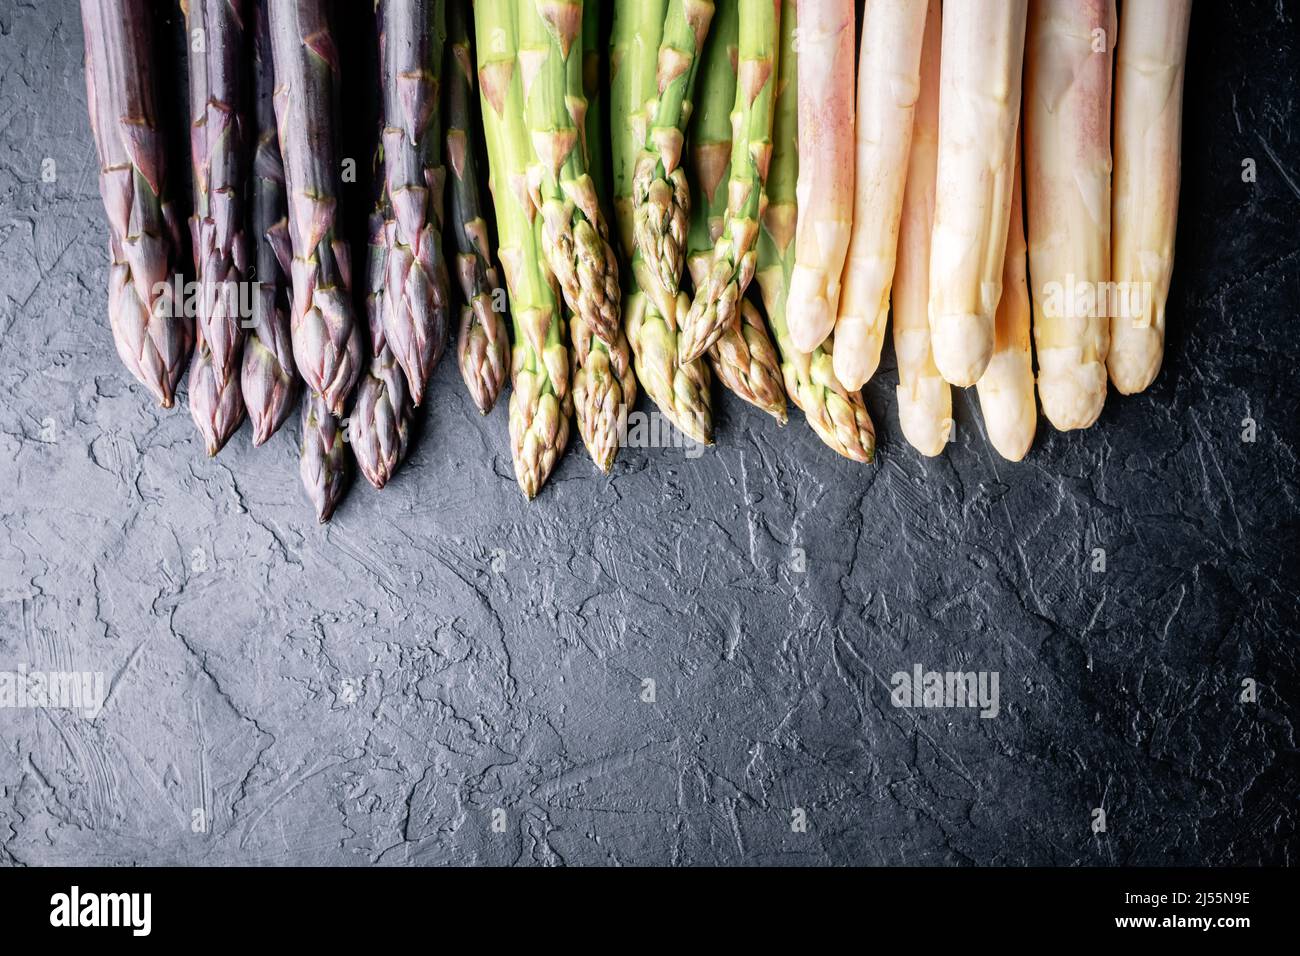 Grüne, violette und weiße Spargelsprossen auf schwarzem Brett Draufsicht flach liegend. Food-Fotografie Stockfoto